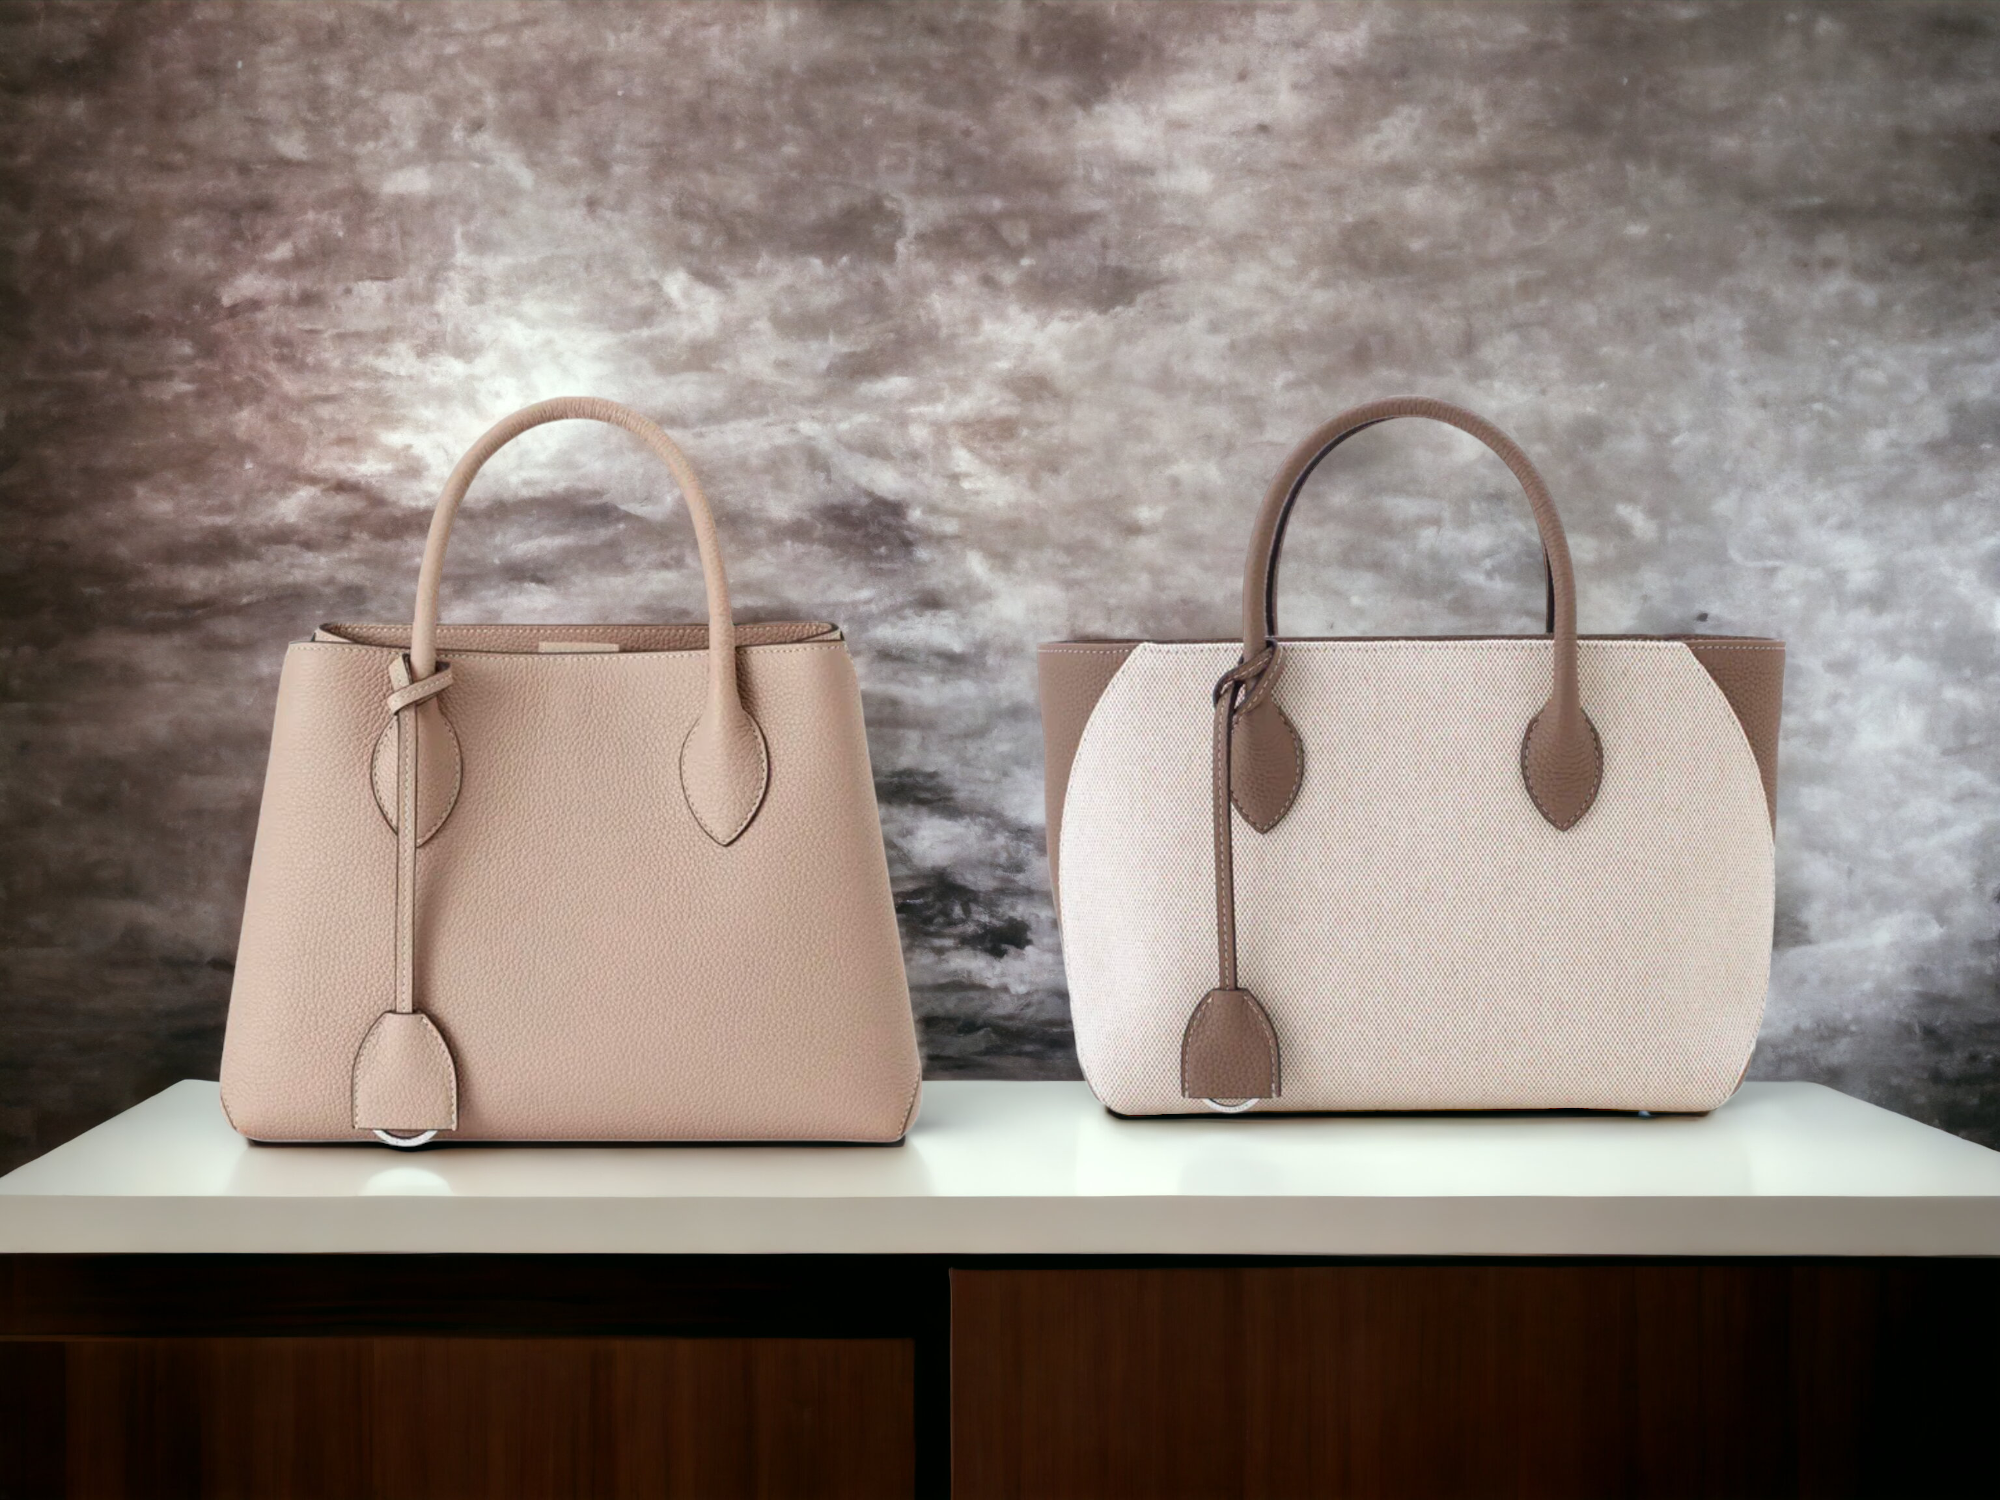 Elegant leather handbag vs. fabric bag by BONAVENTURA on a plain background, symbolizing luxury and quality.